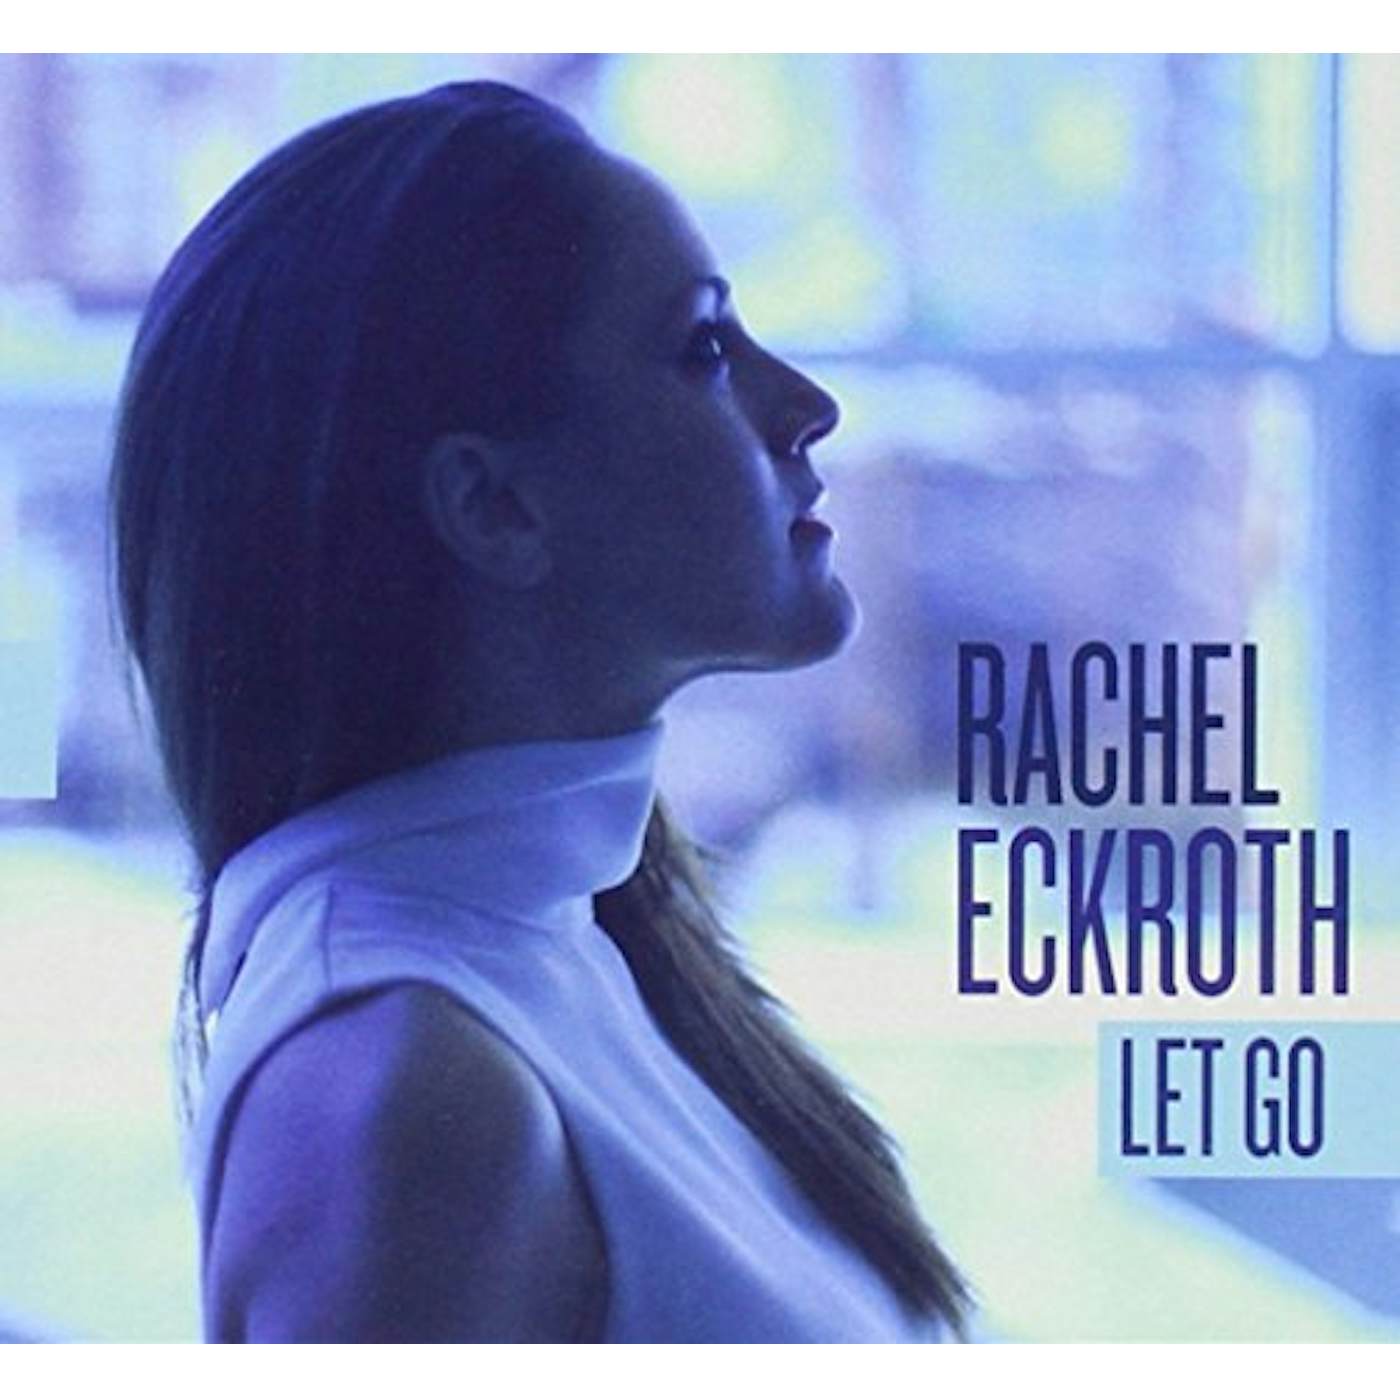 Rachel Eckroth LET GO CD